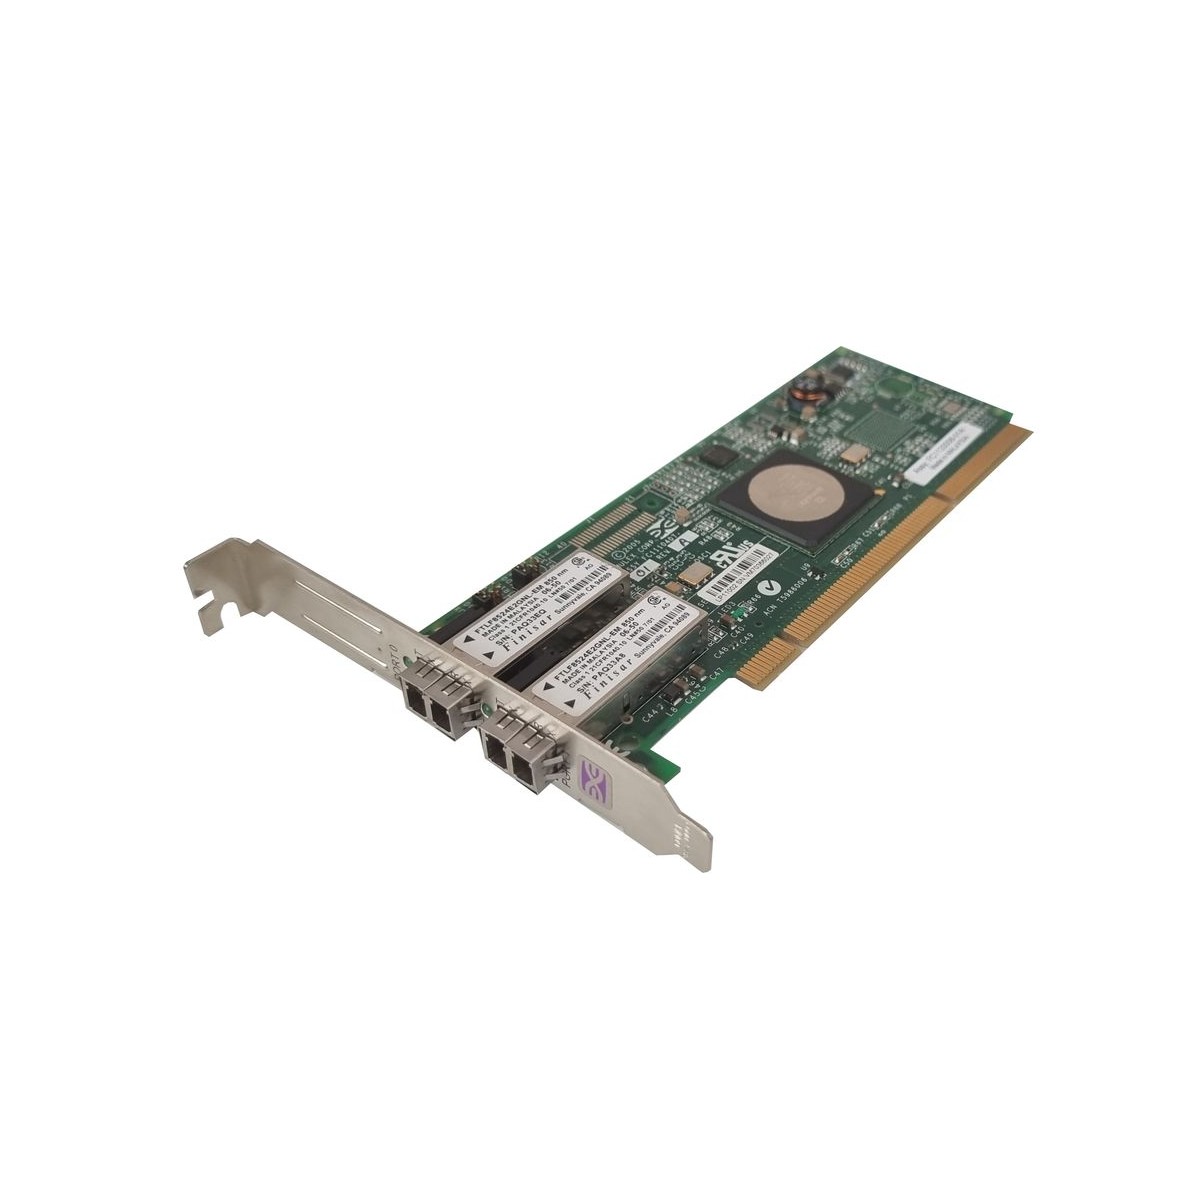 HP EMULEX LP11002 2x4GB FC HBA PCI-X 410985-001